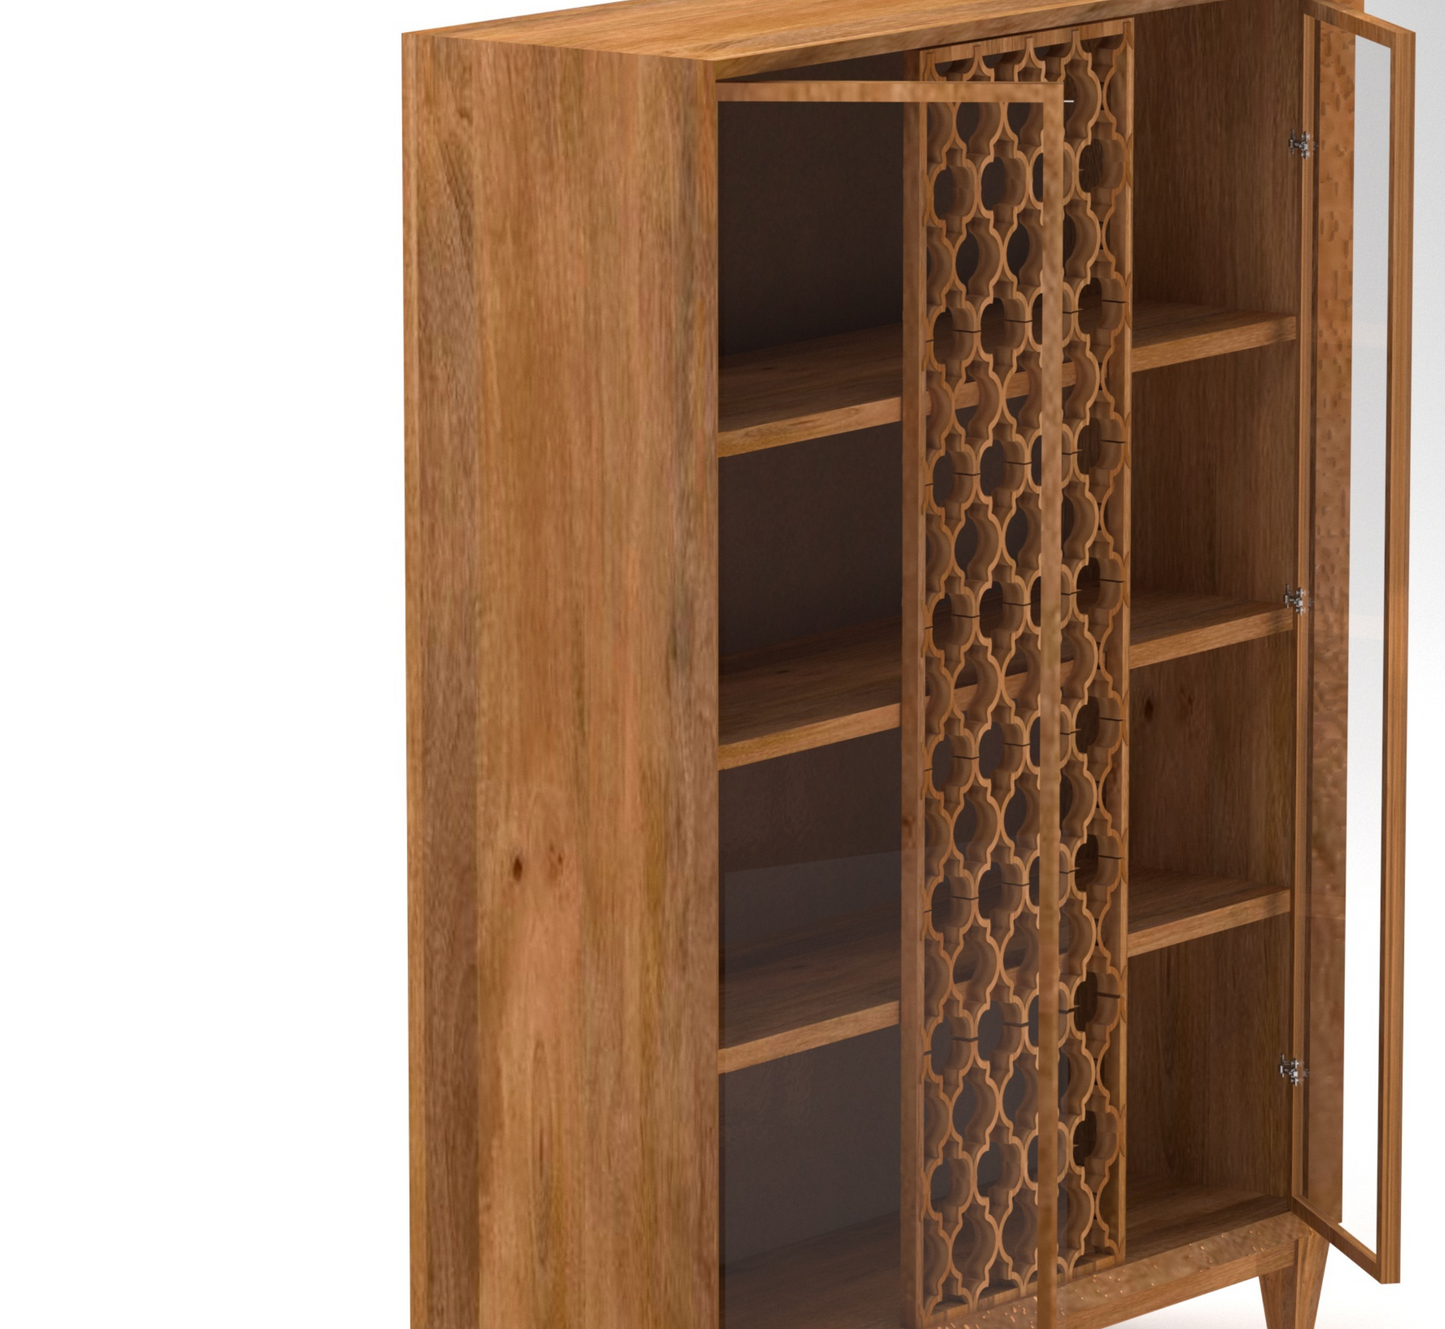 Felicity Wooden 5FT Crockery Cabinet